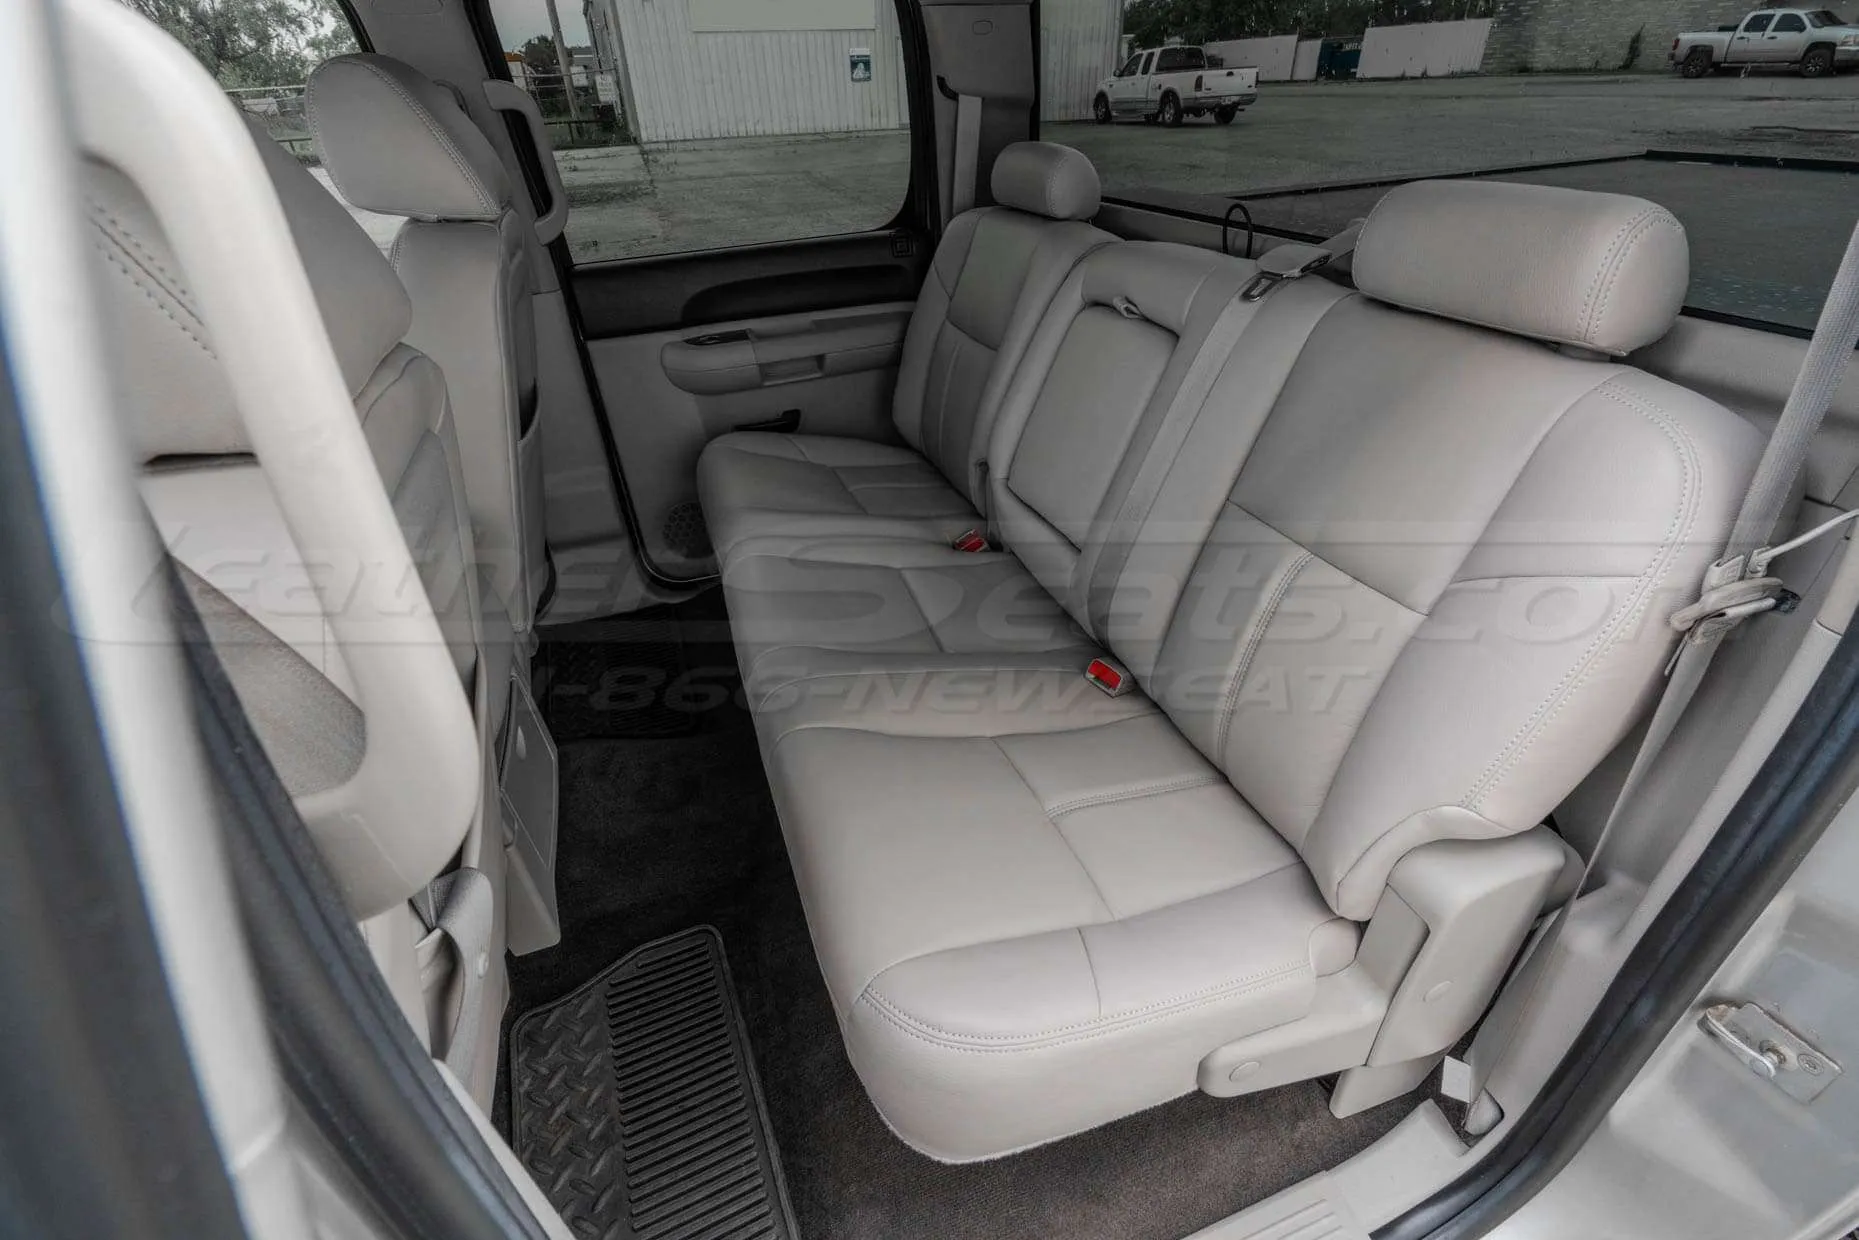 Chevrolet Silverado rear leather seats in Dove Grey